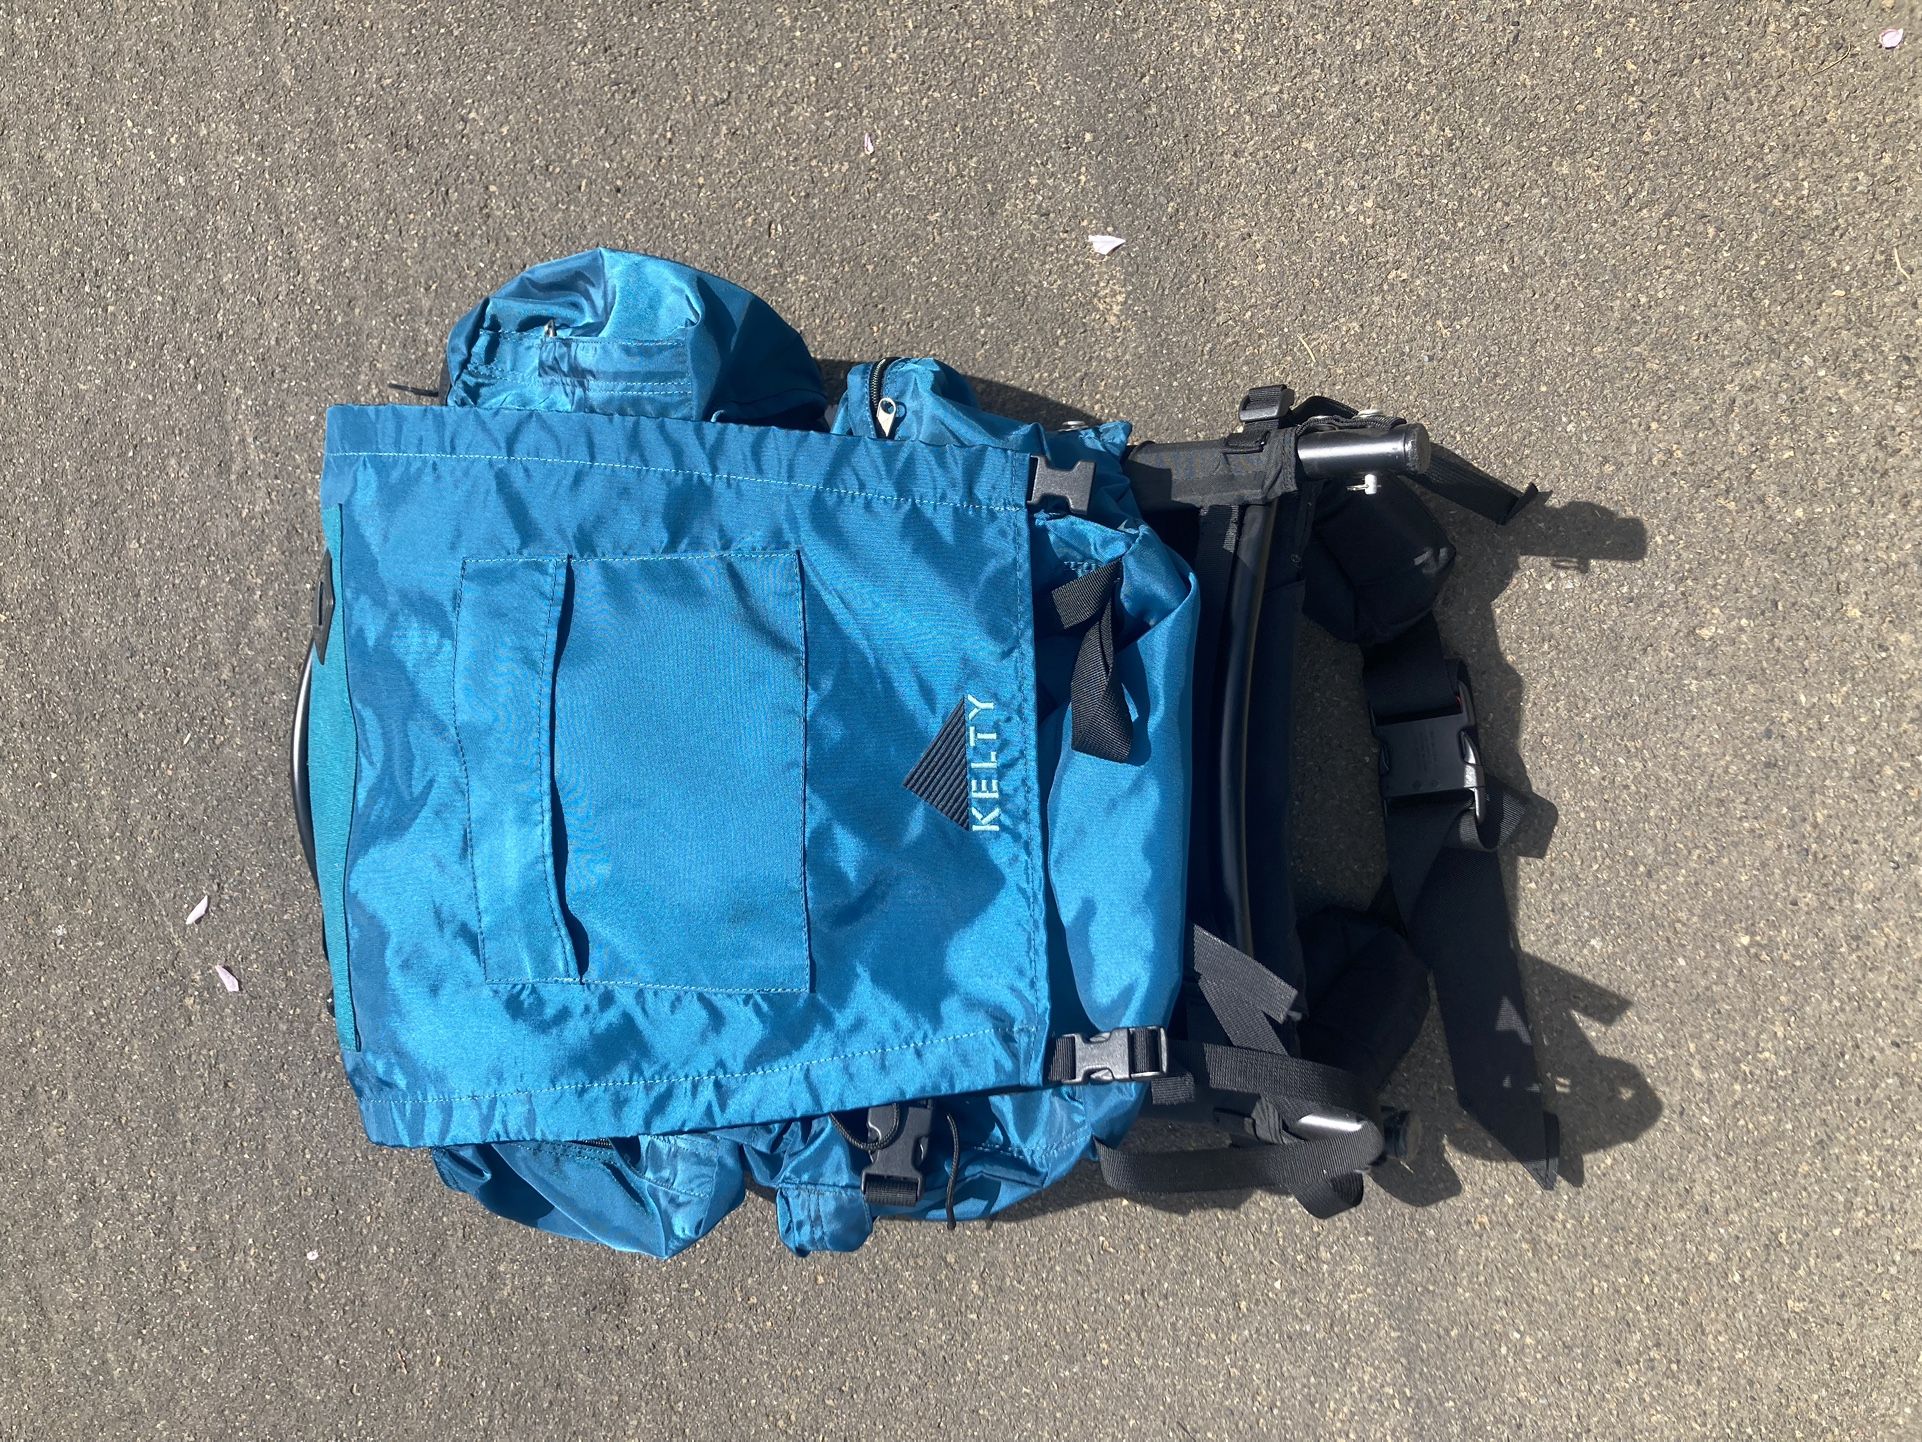 Kelty Trekker Backpacking Pack